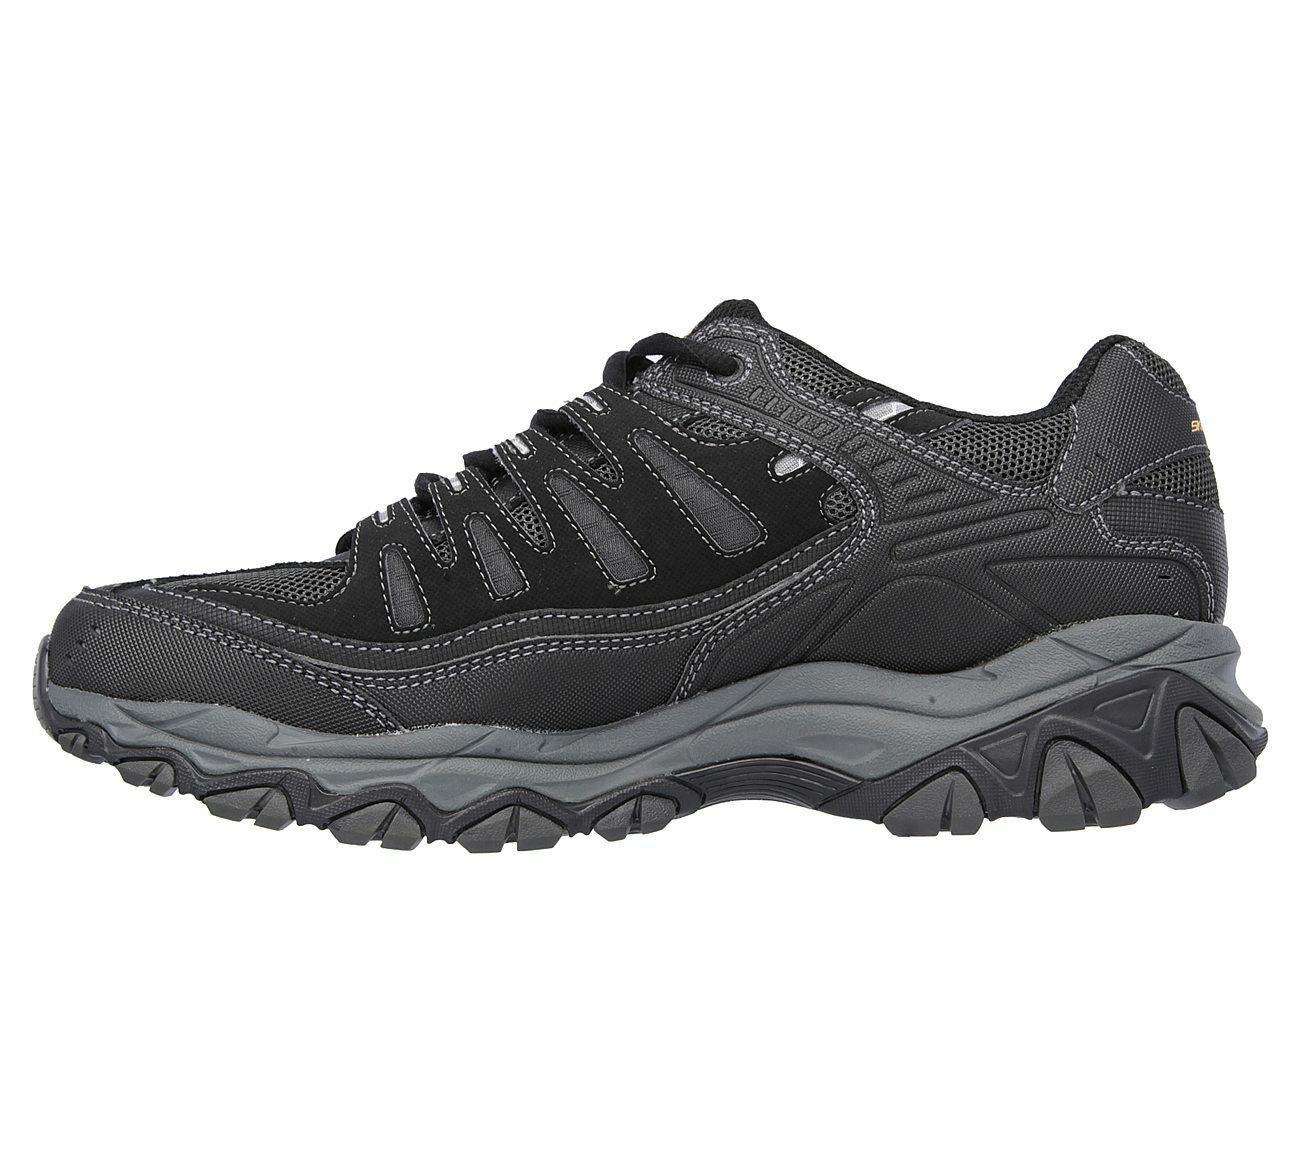 Skechers 4E Wide Width Black shoes Men's Memory Foam Leather Mesh ...